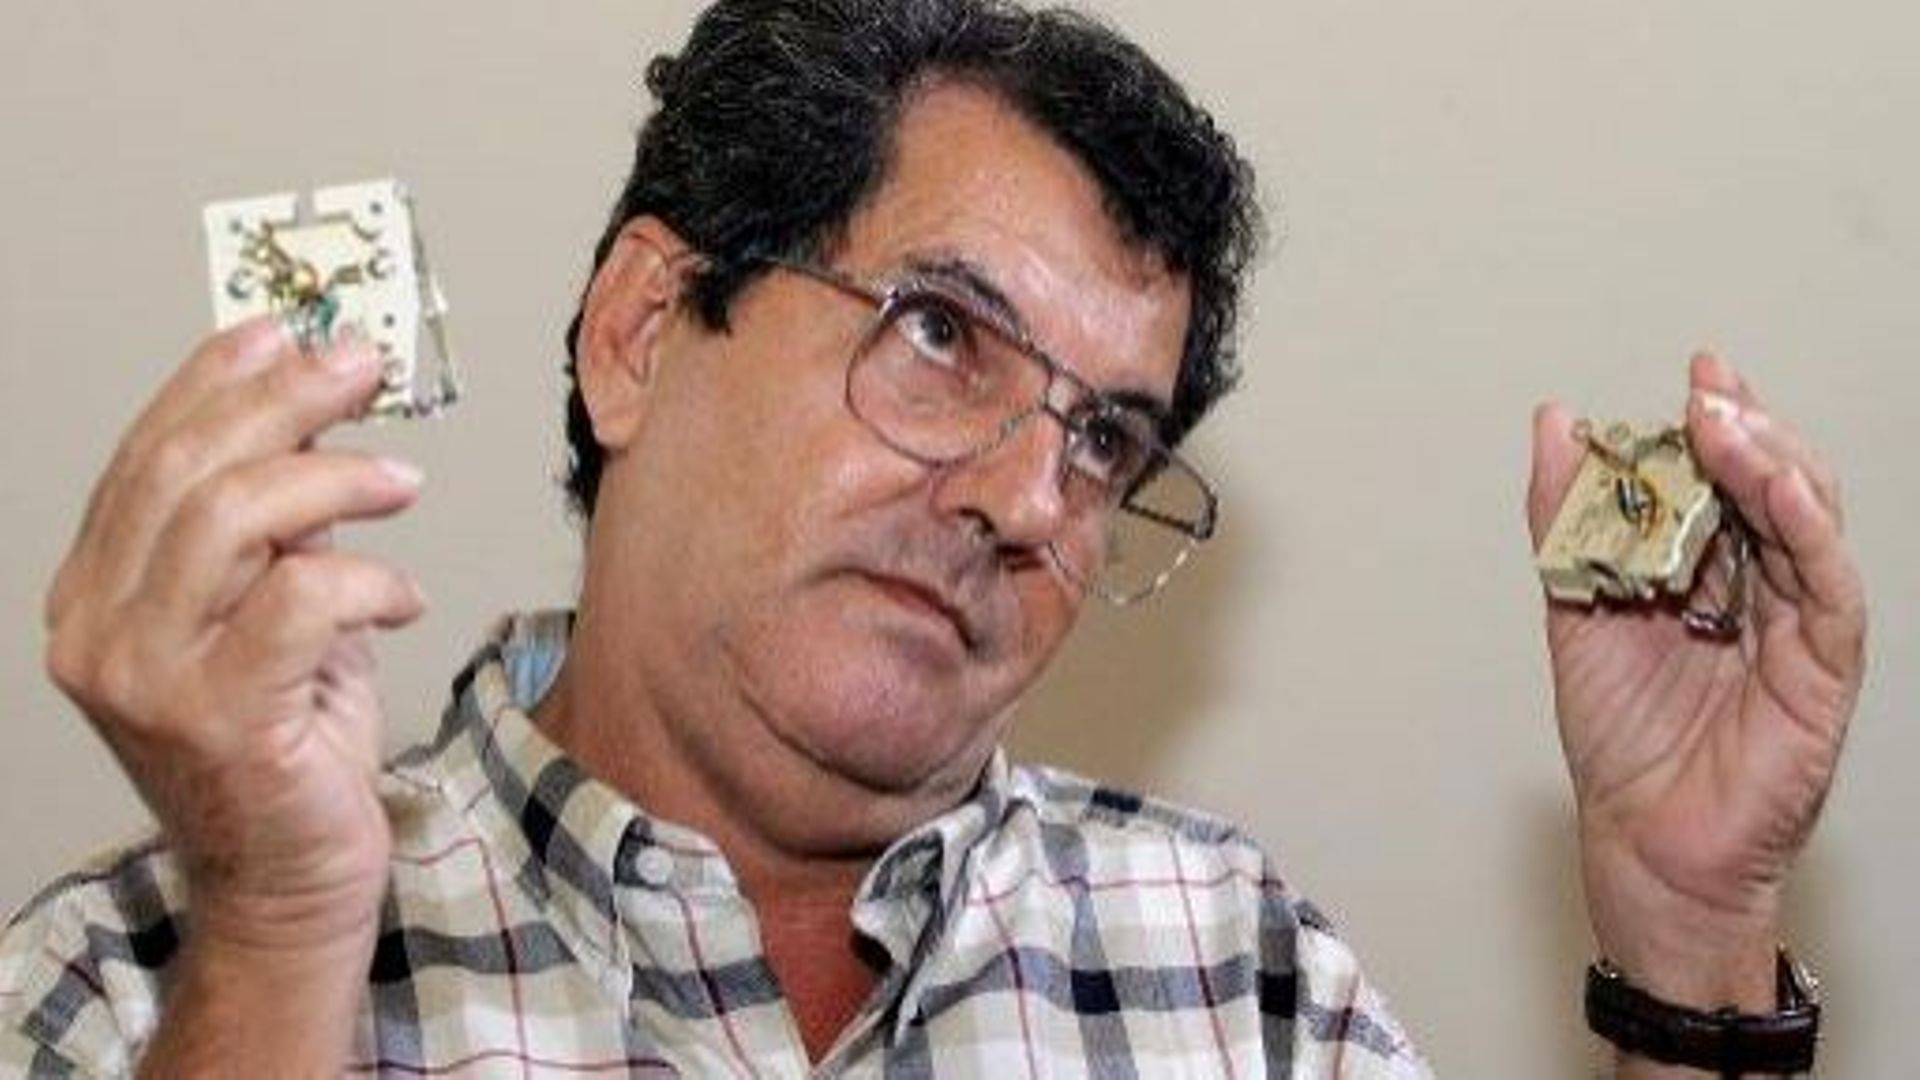 Le dissident cubain Oswaldo Paya, le 13 décembre 2004 à La Havane